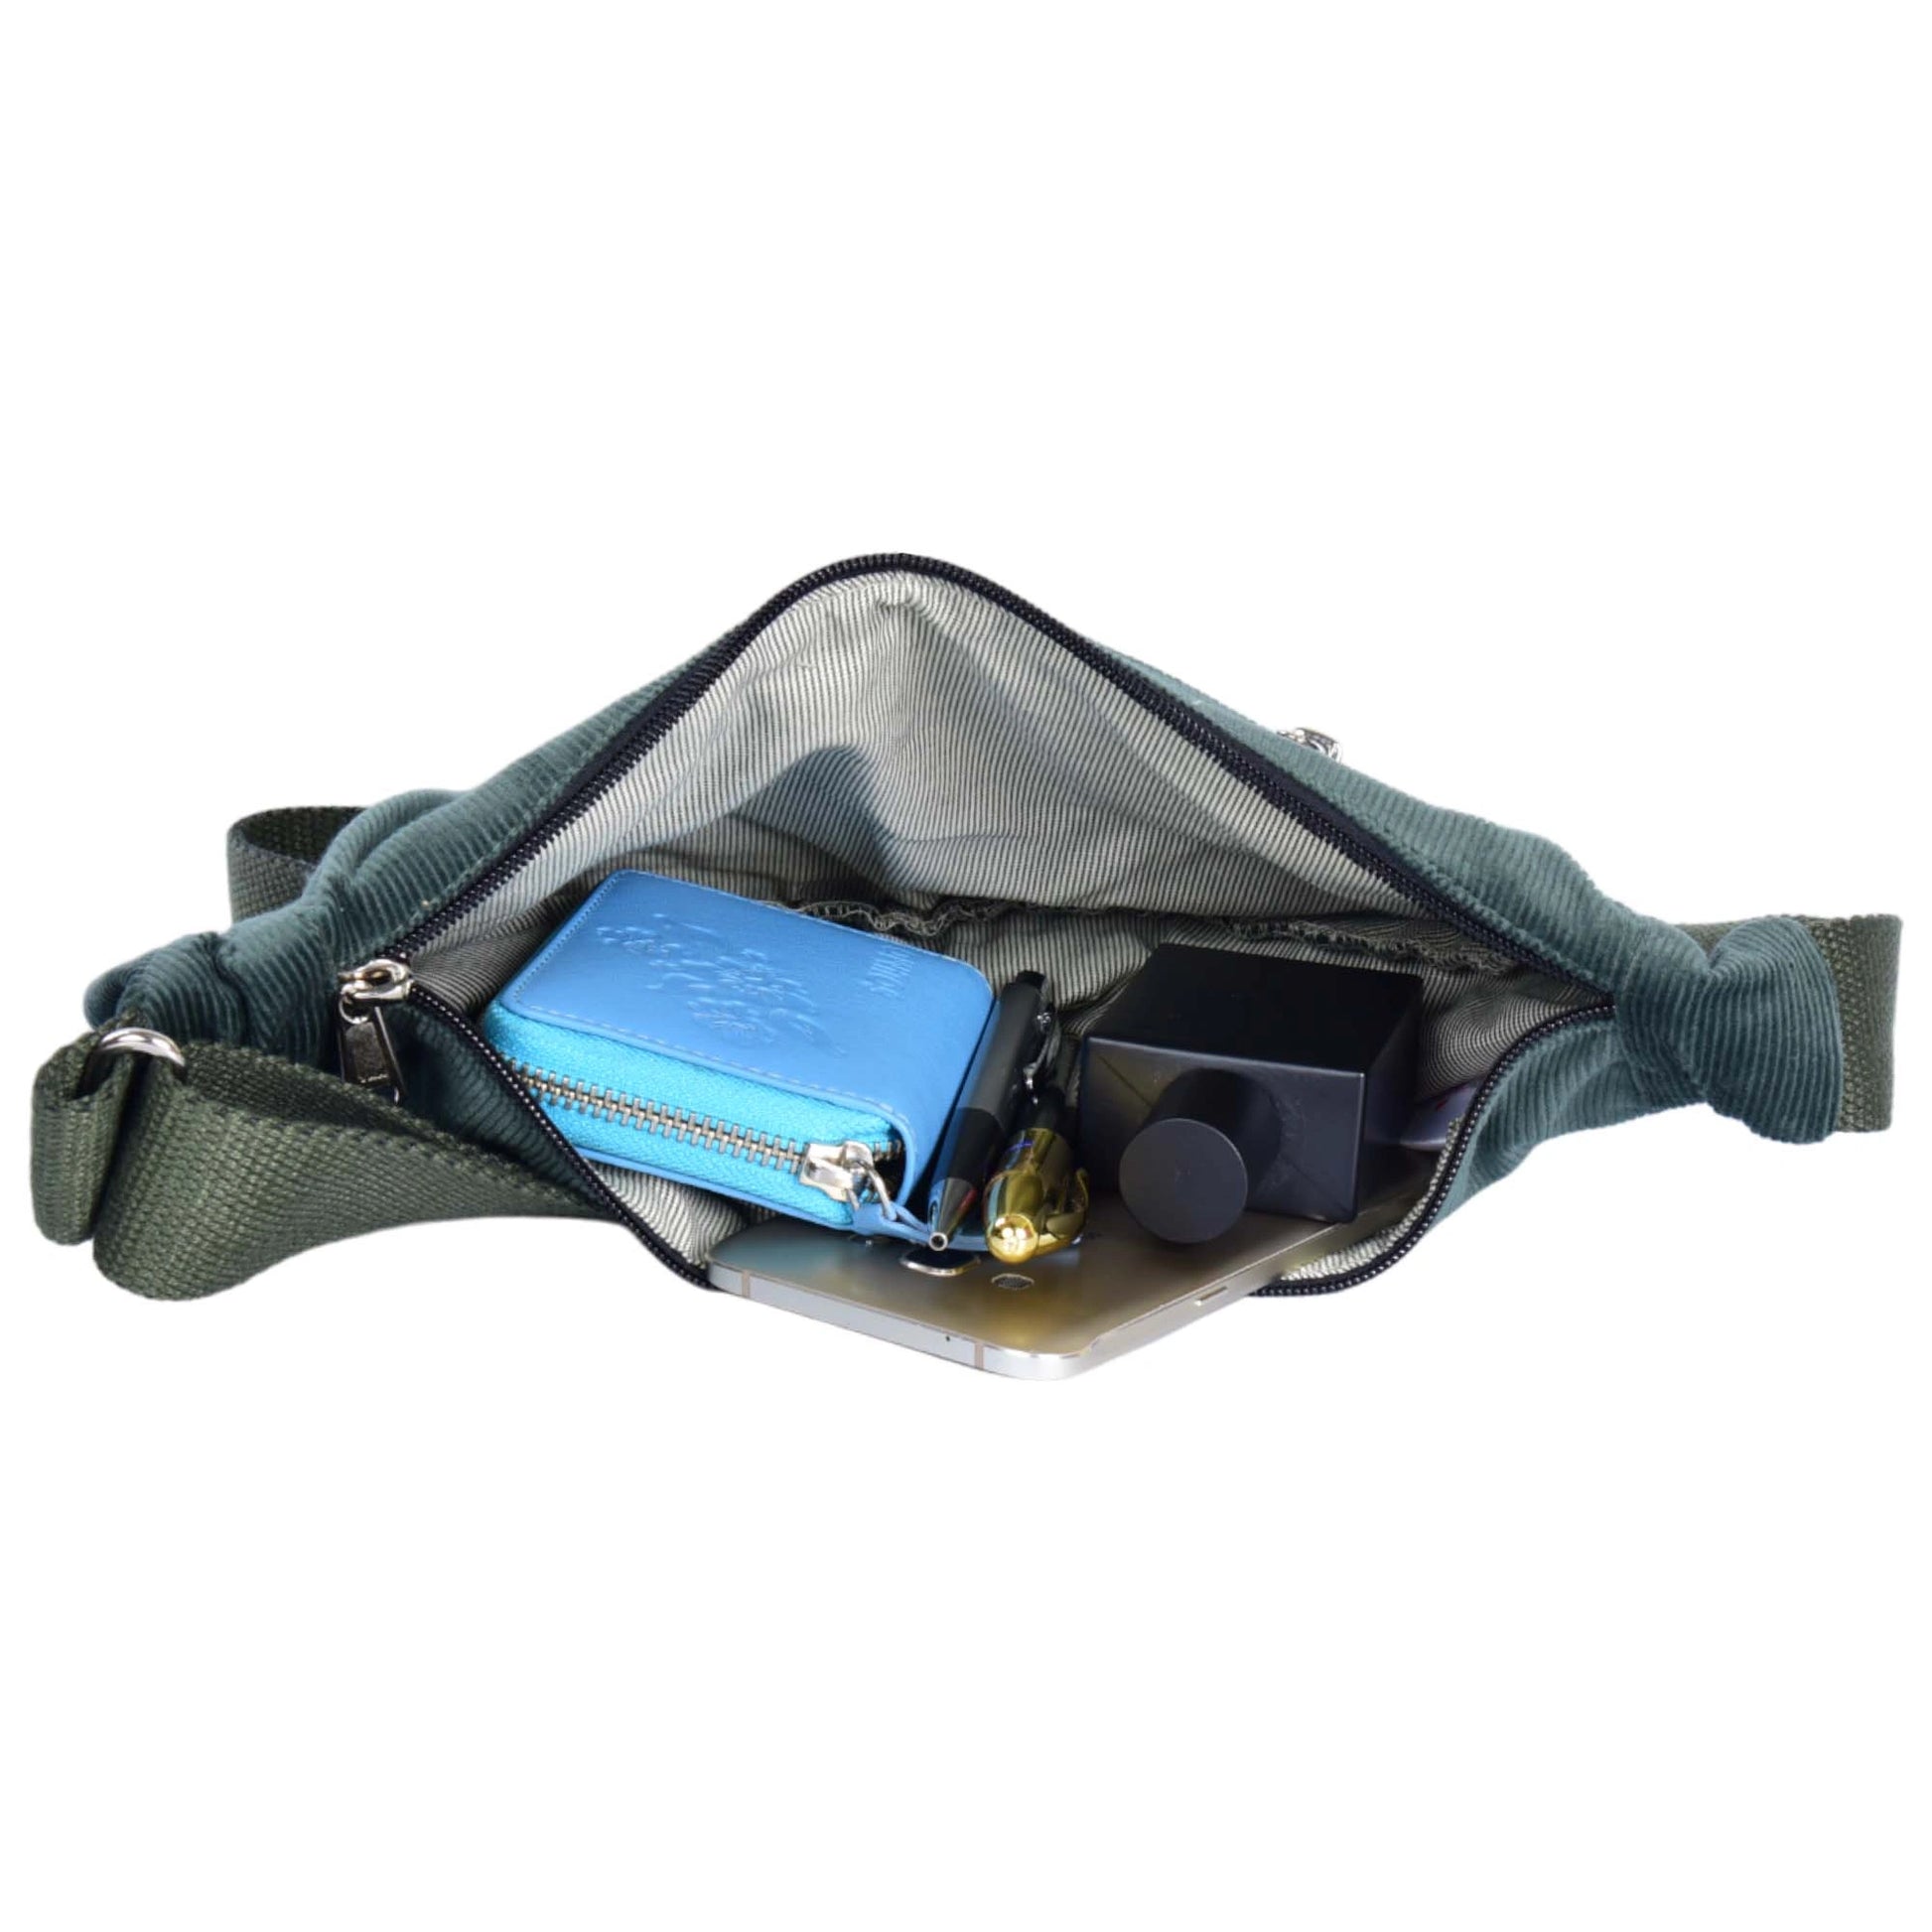 Crossbody-Bag, kleine Umhängetasche aus Cord samt, in Olivgrün. Hauptfach und Seitenfach außen sind mit einem Reißverschluss verschließbar.